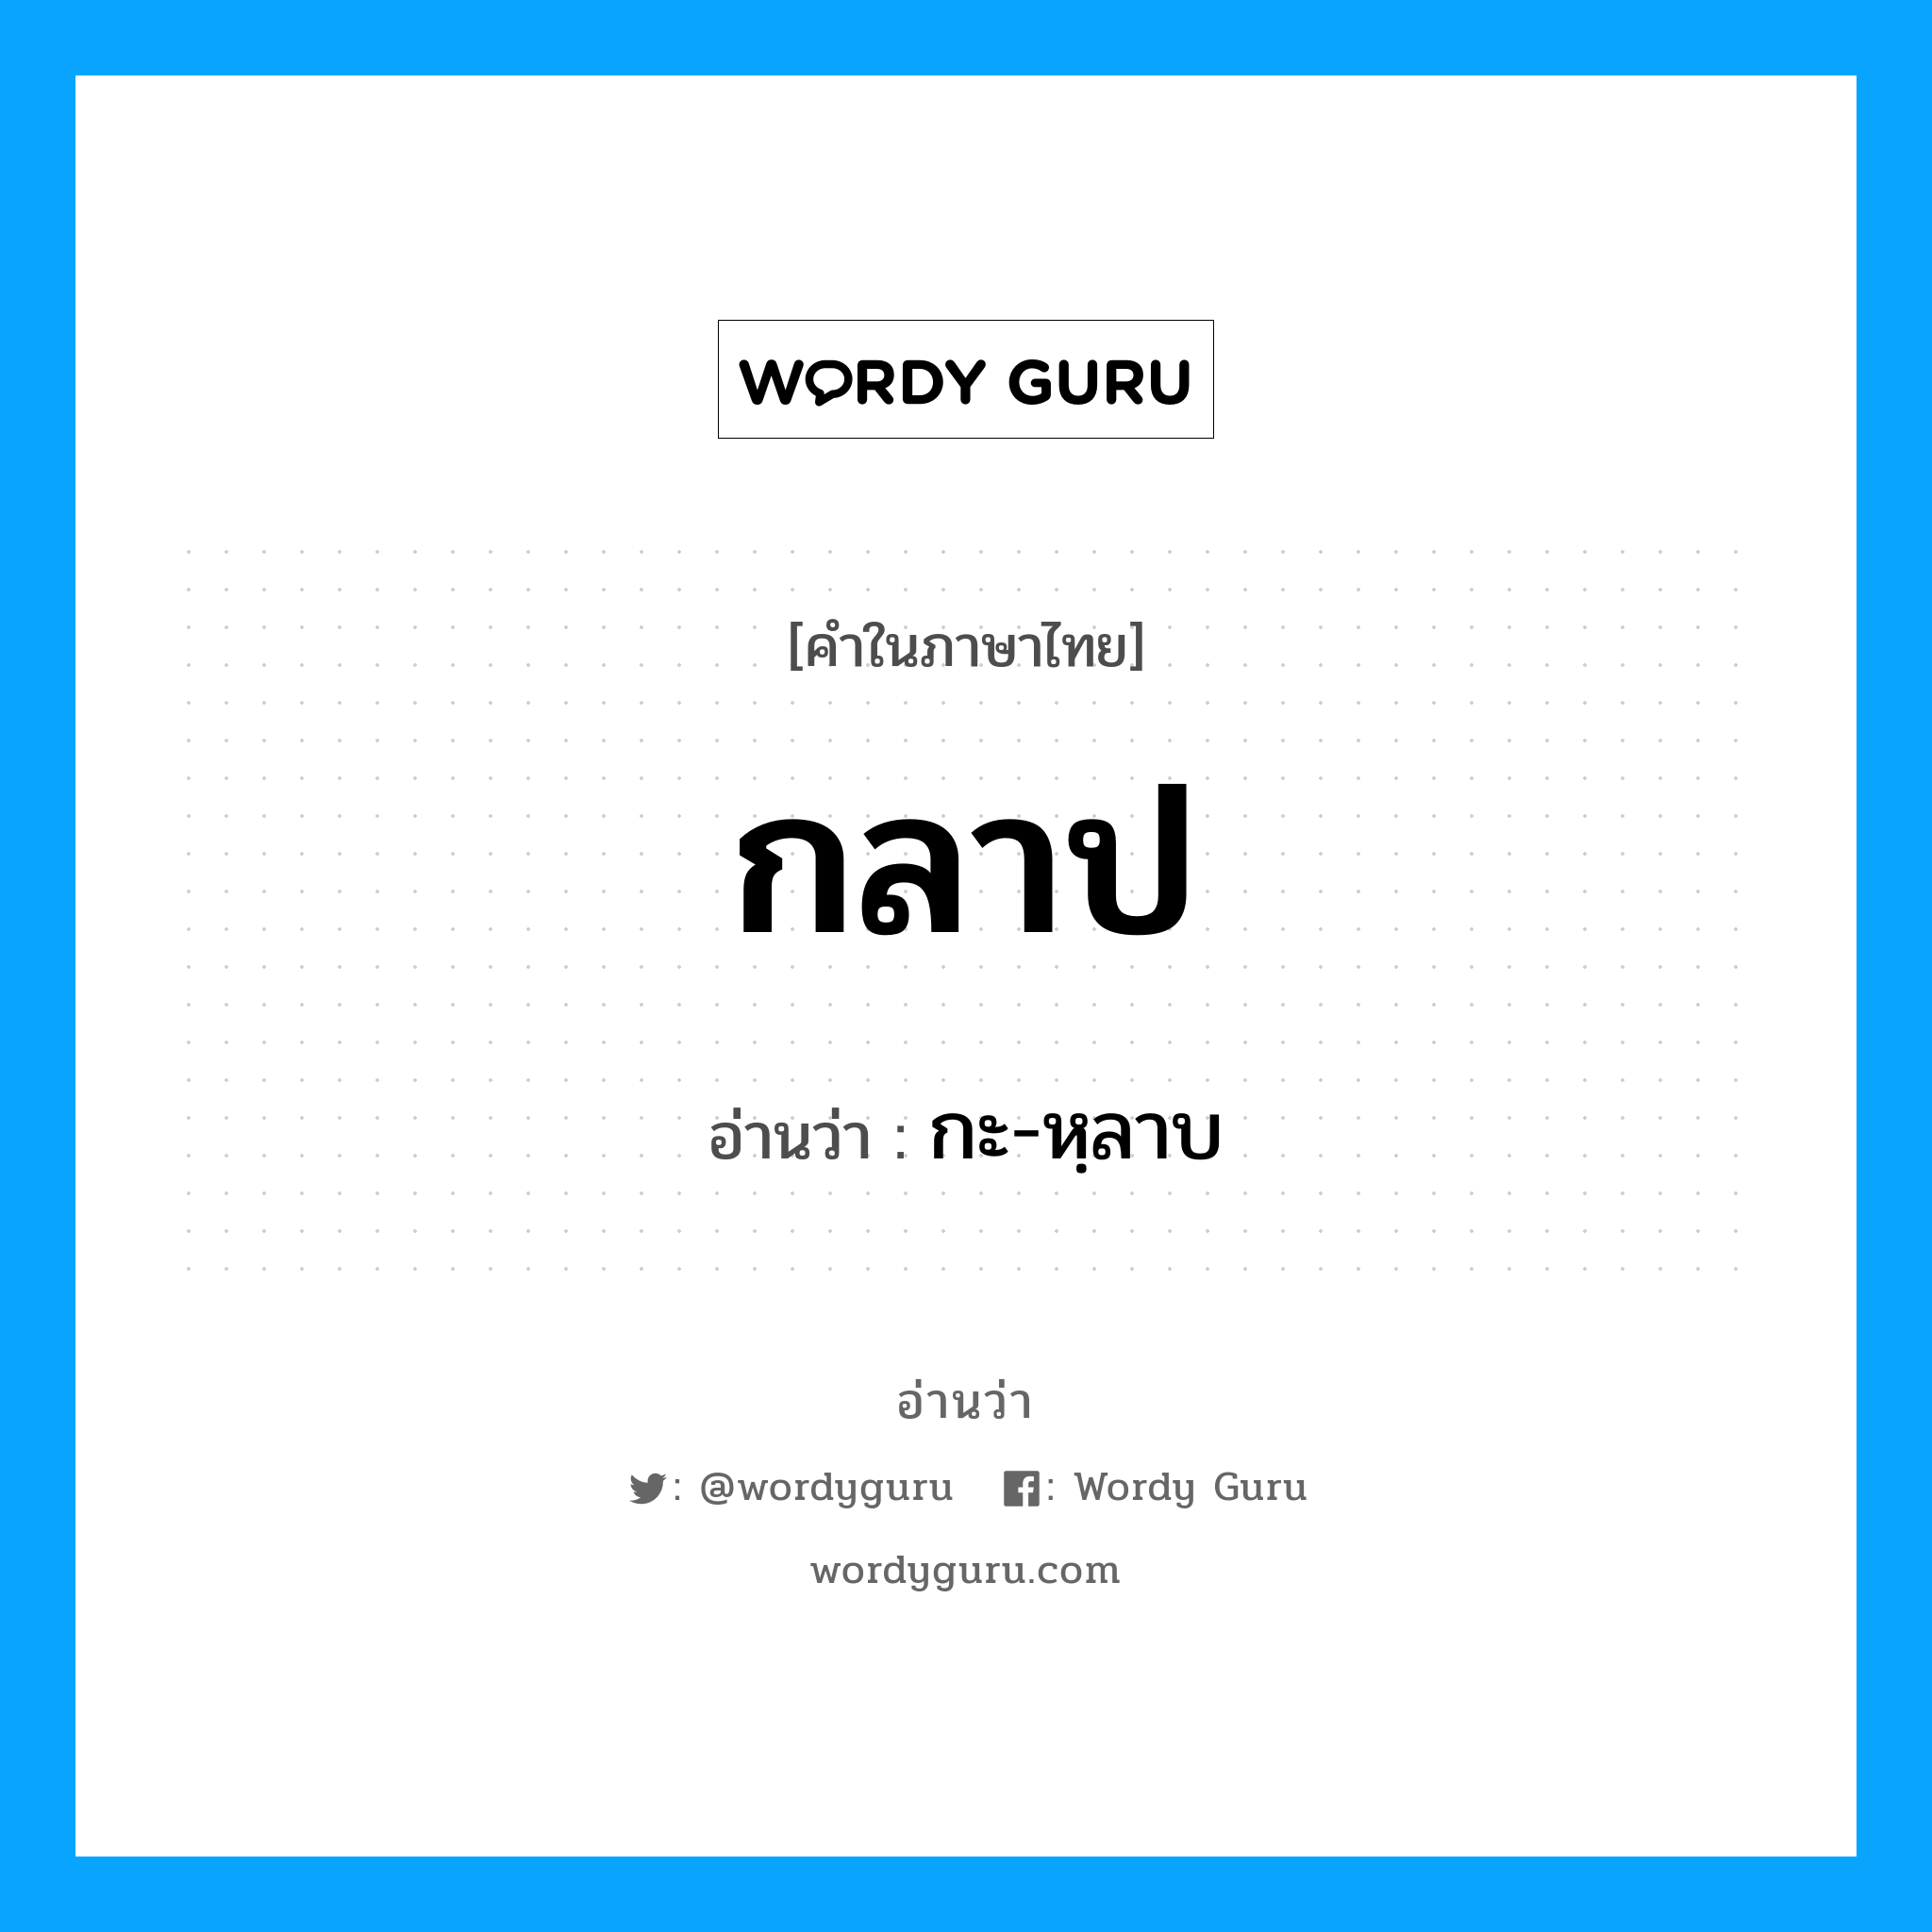 กะ-หฺลาบ เป็นคำอ่านของคำไหน?, คำในภาษาไทย กะ-หฺลาบ อ่านว่า กลาป